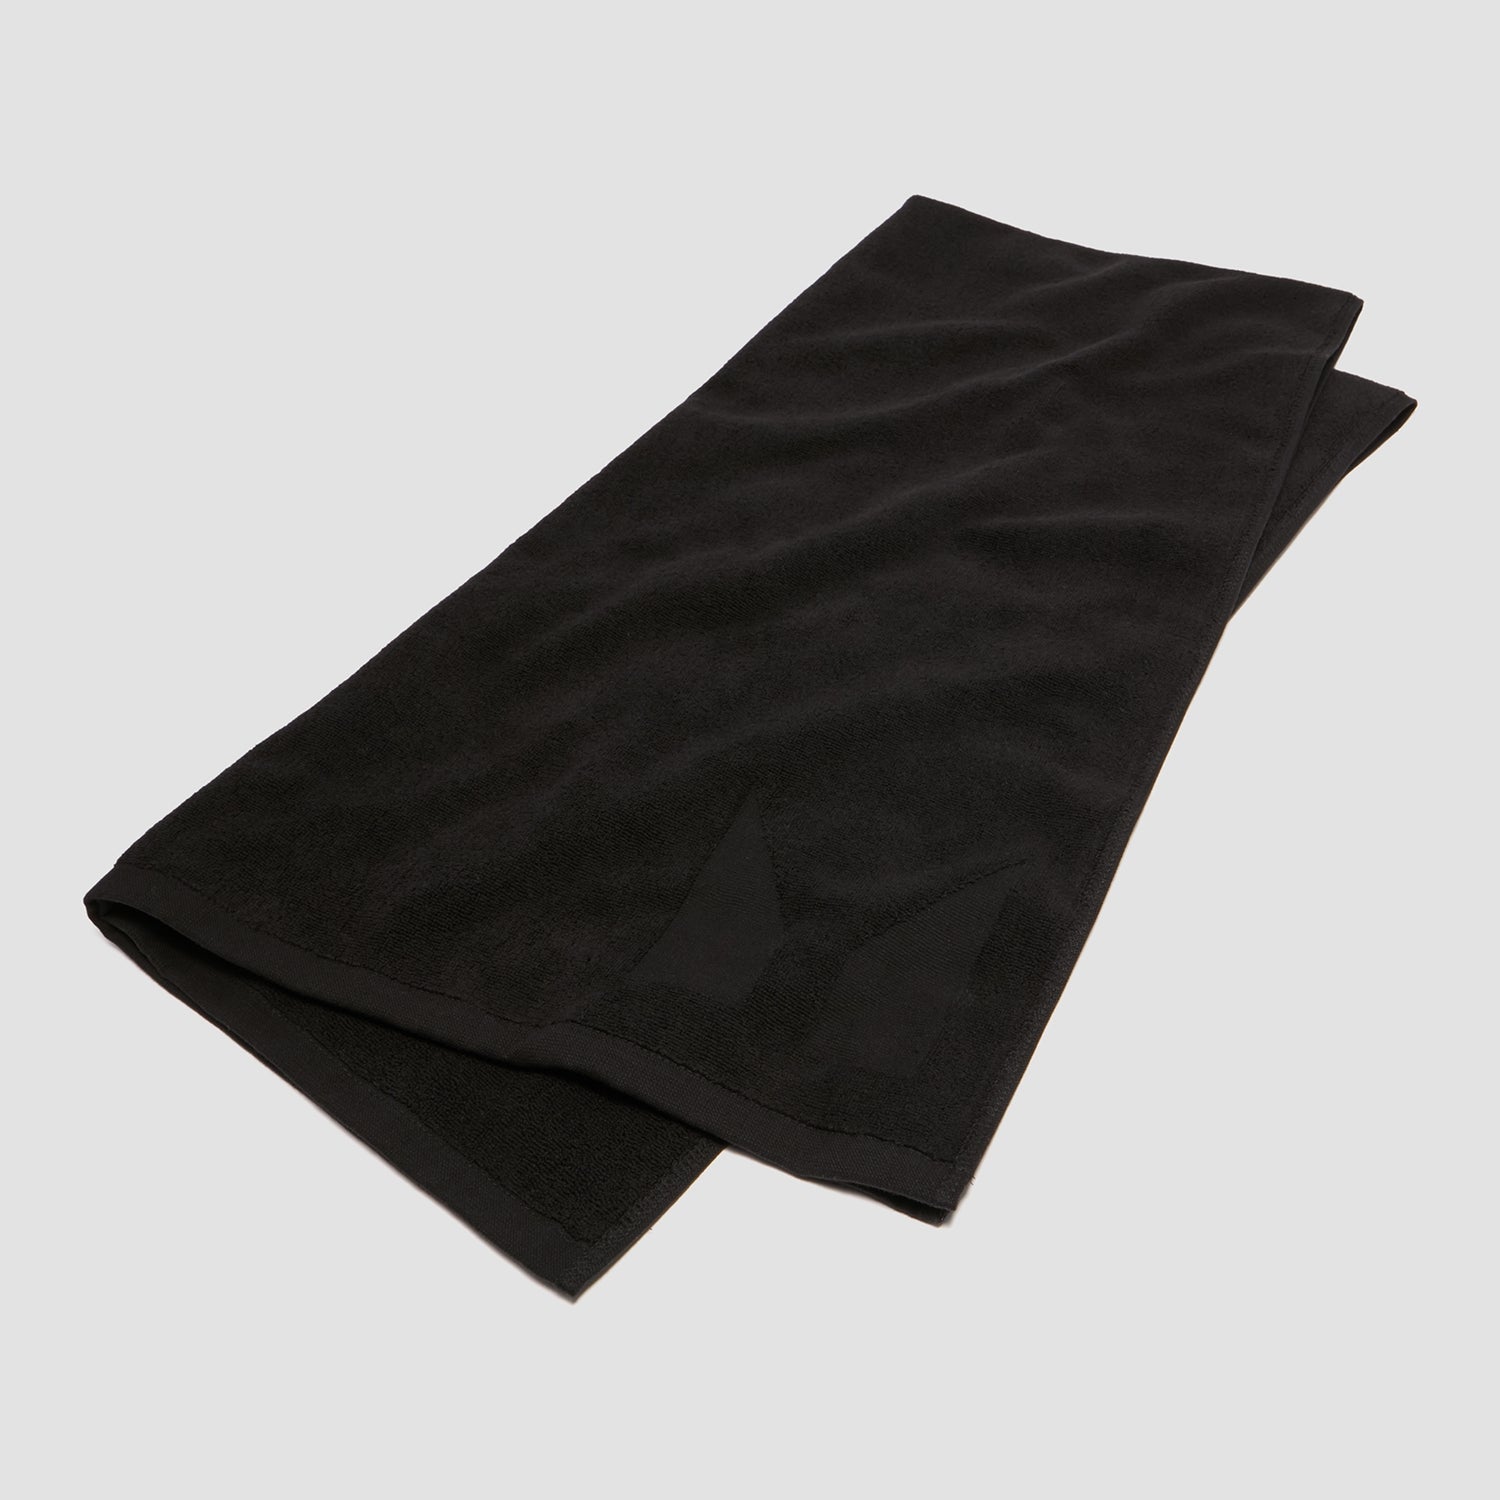 Grote handdoek (zwart)